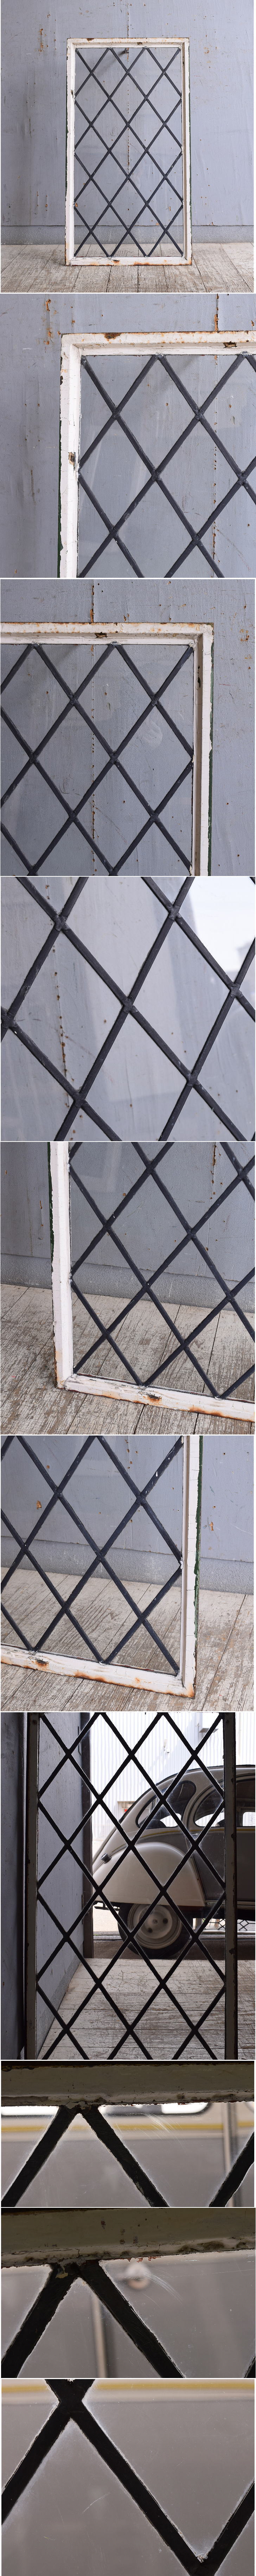 イギリス アンティーク 窓 無色透明 10815